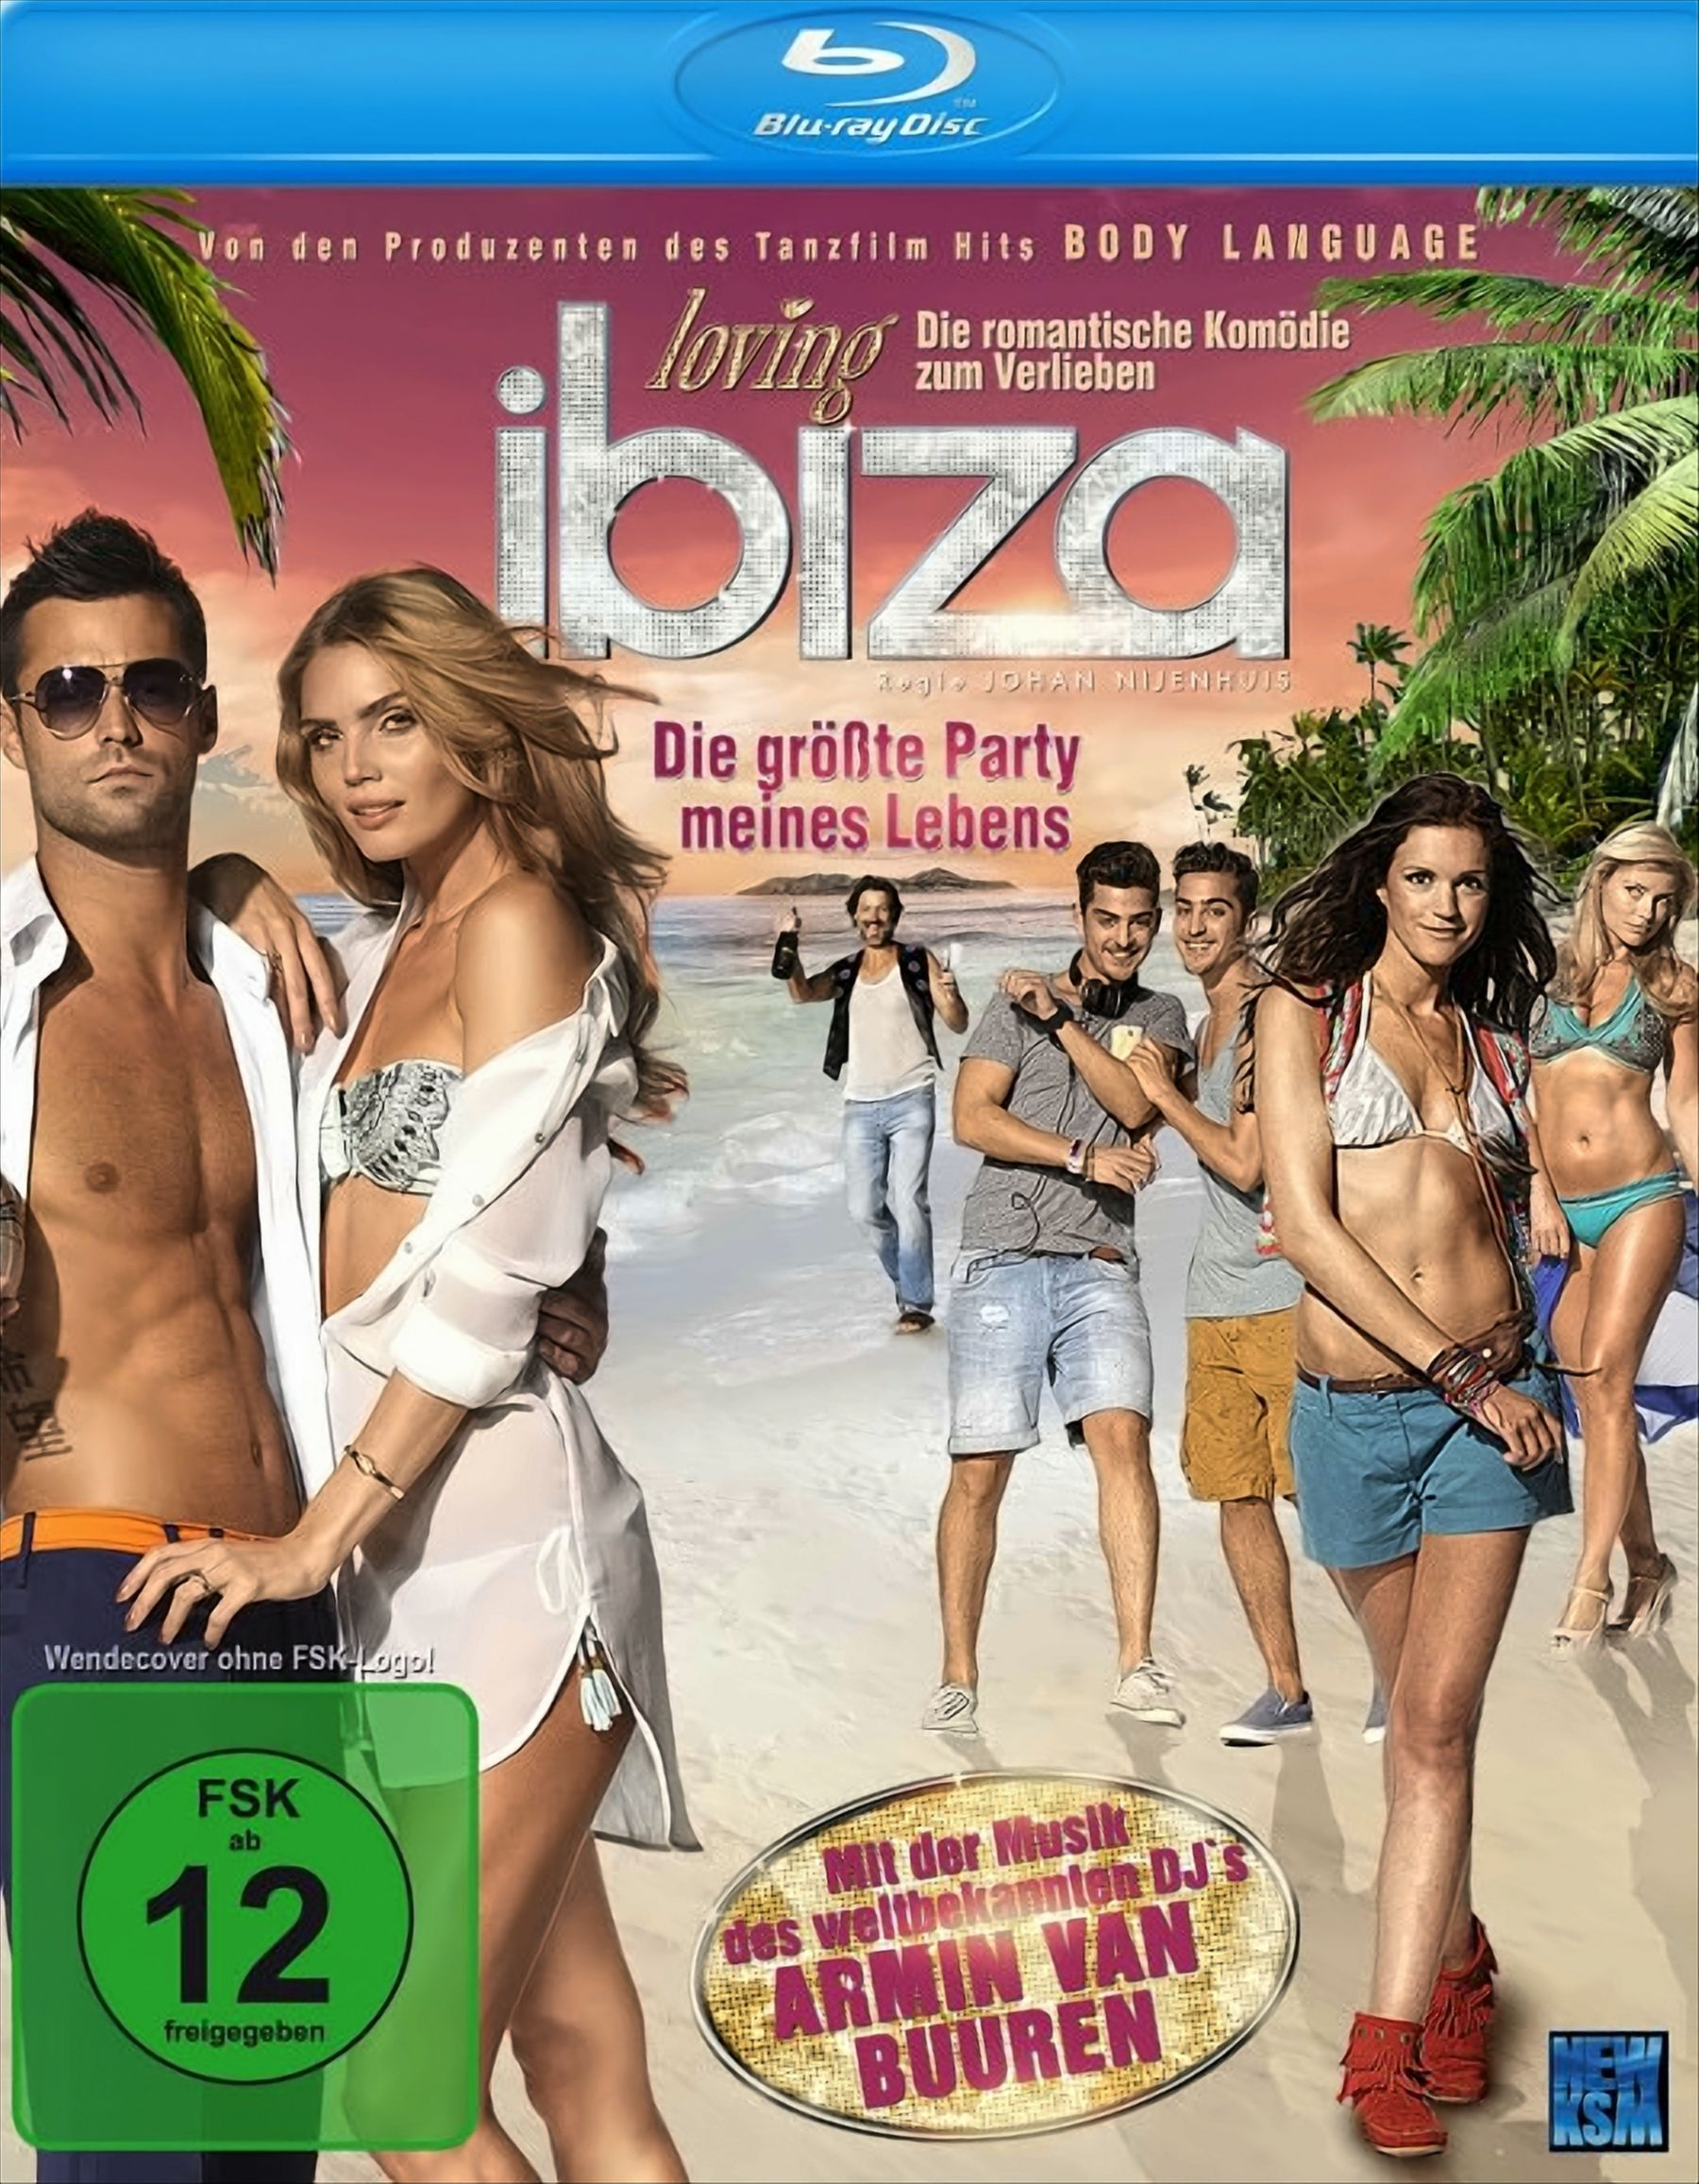 meines Die Loving Ibiza Blu-ray - Party Lebens größte